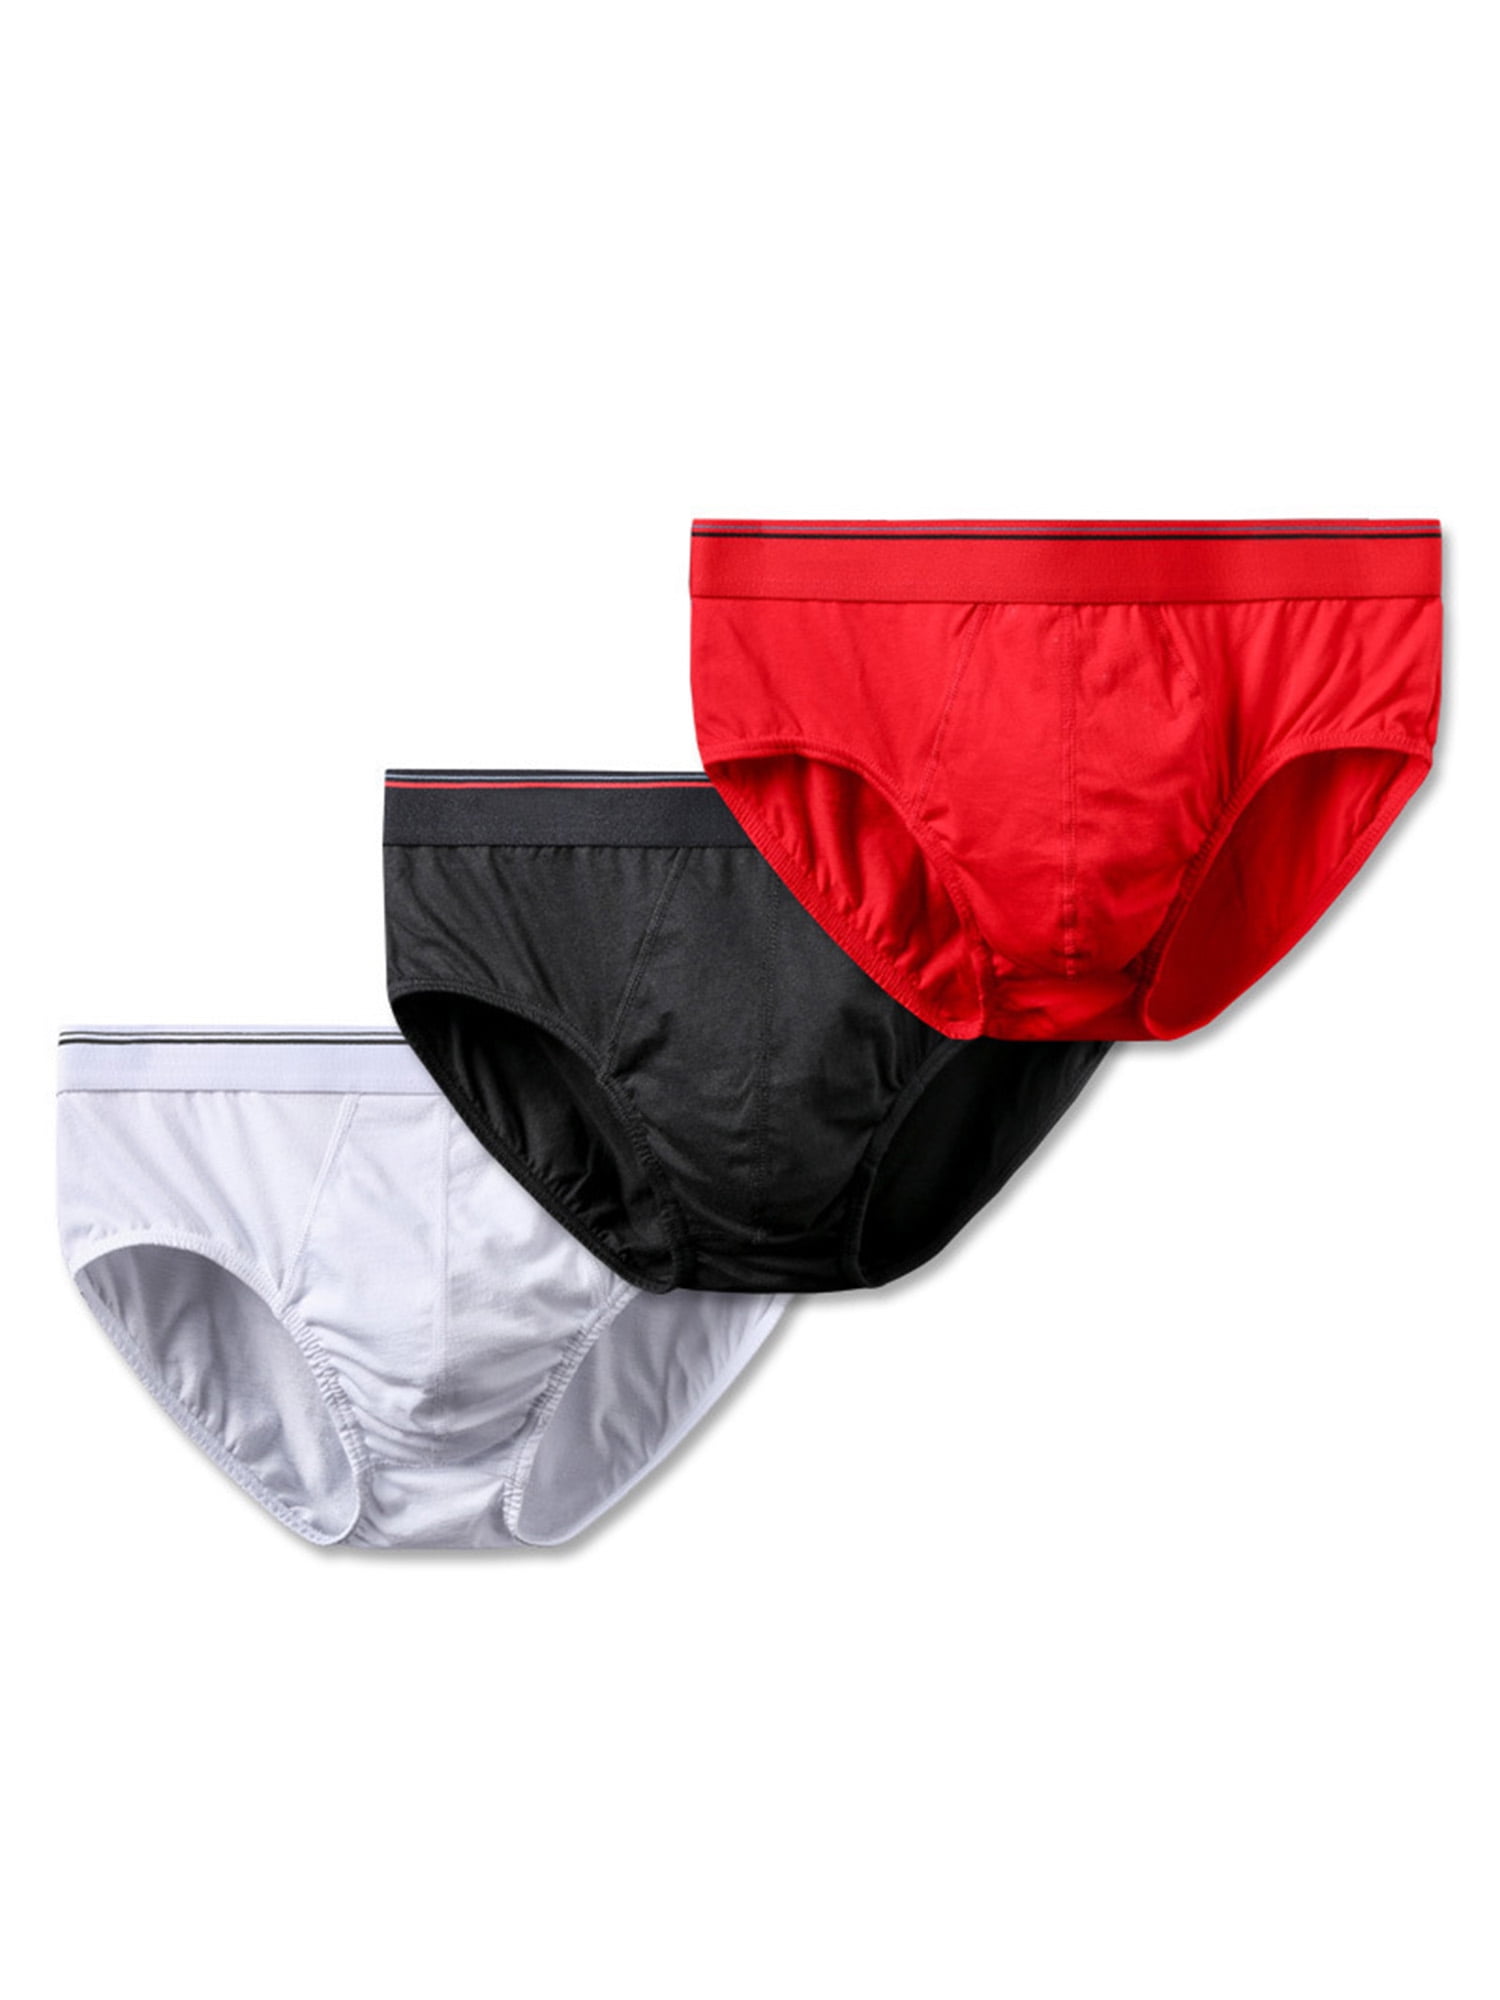 Mens underwear cotton U convex design solid color Tongle pants,2pcs,3pcs,4pcs,5pcs,